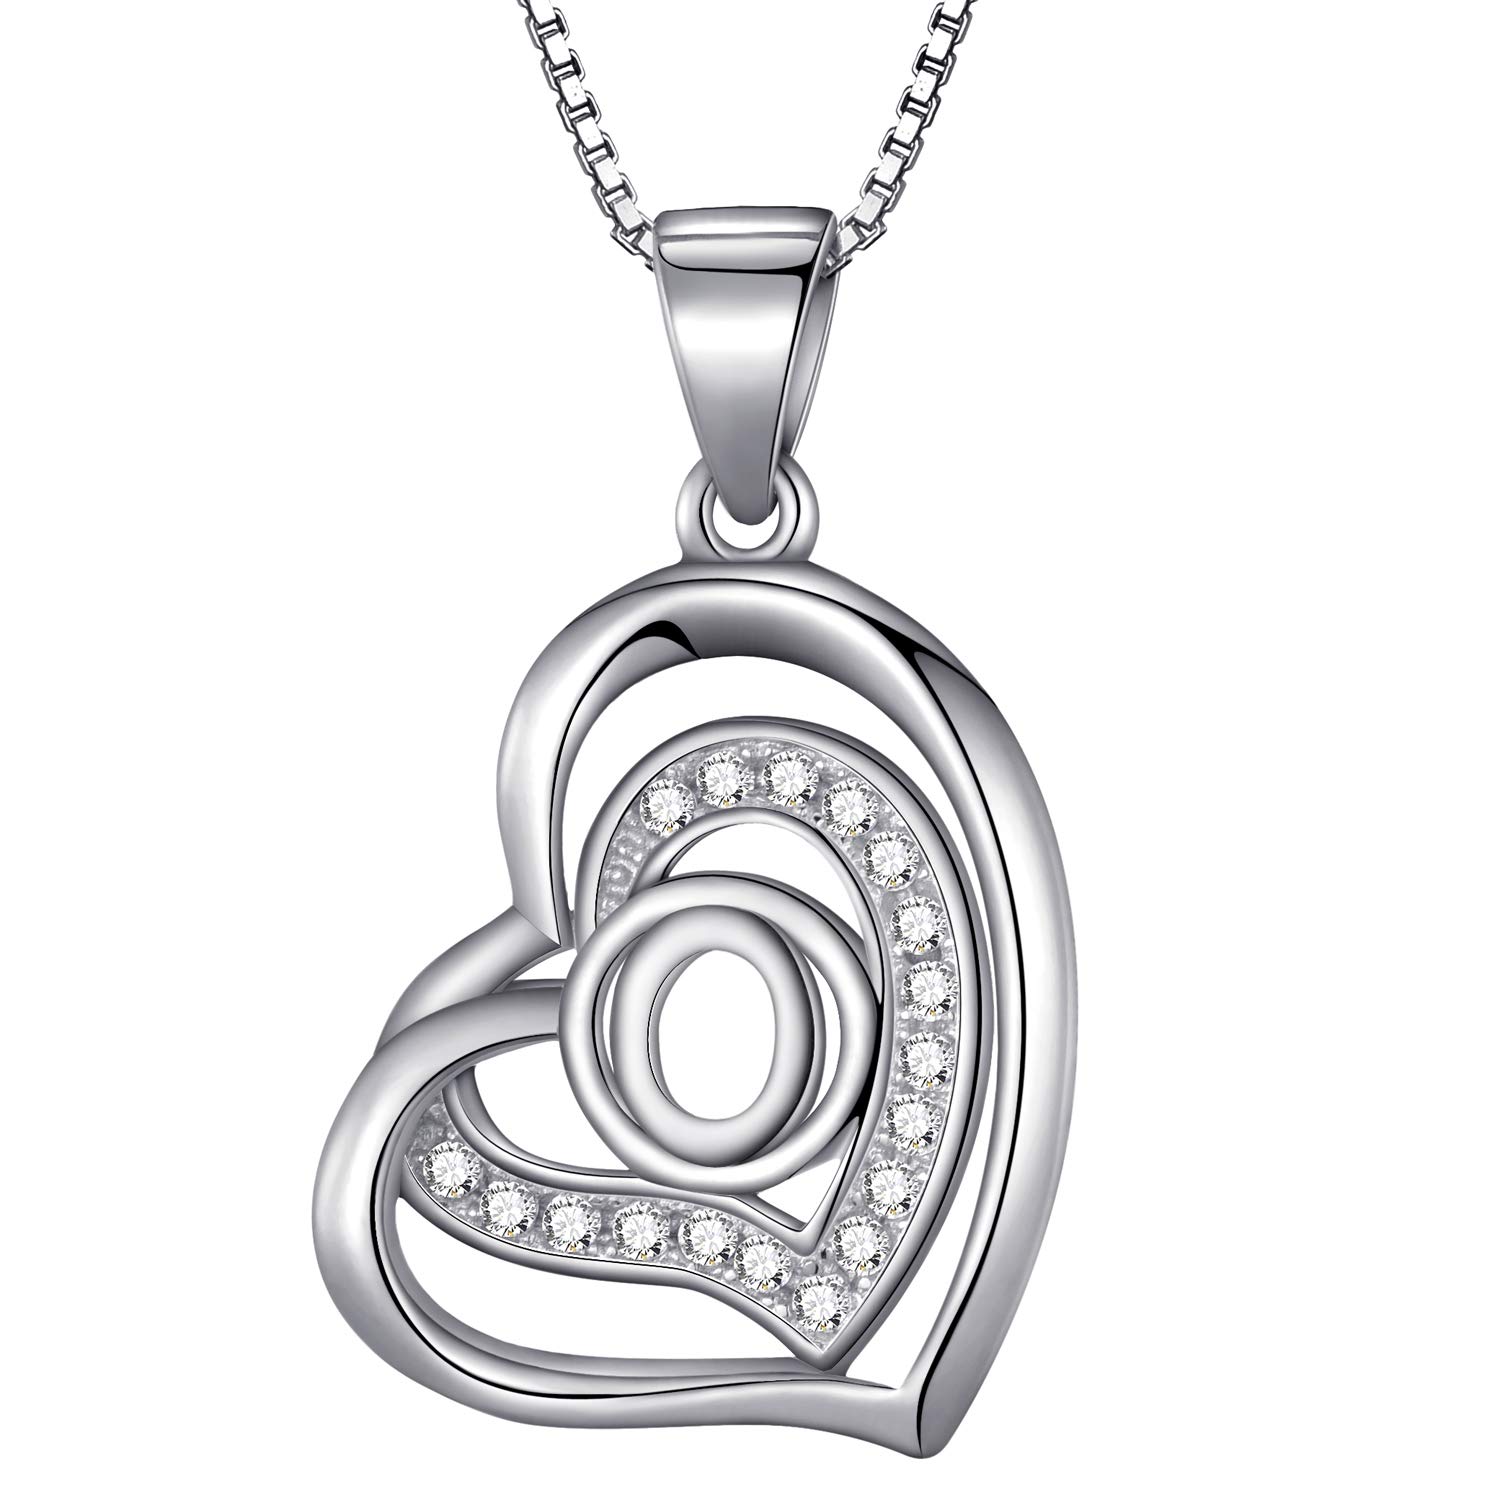 Morella Damen Halskette Herz Buchstabe O 925 Silber rhodiniert mit Zirkoniasteinen weiß 46 cm